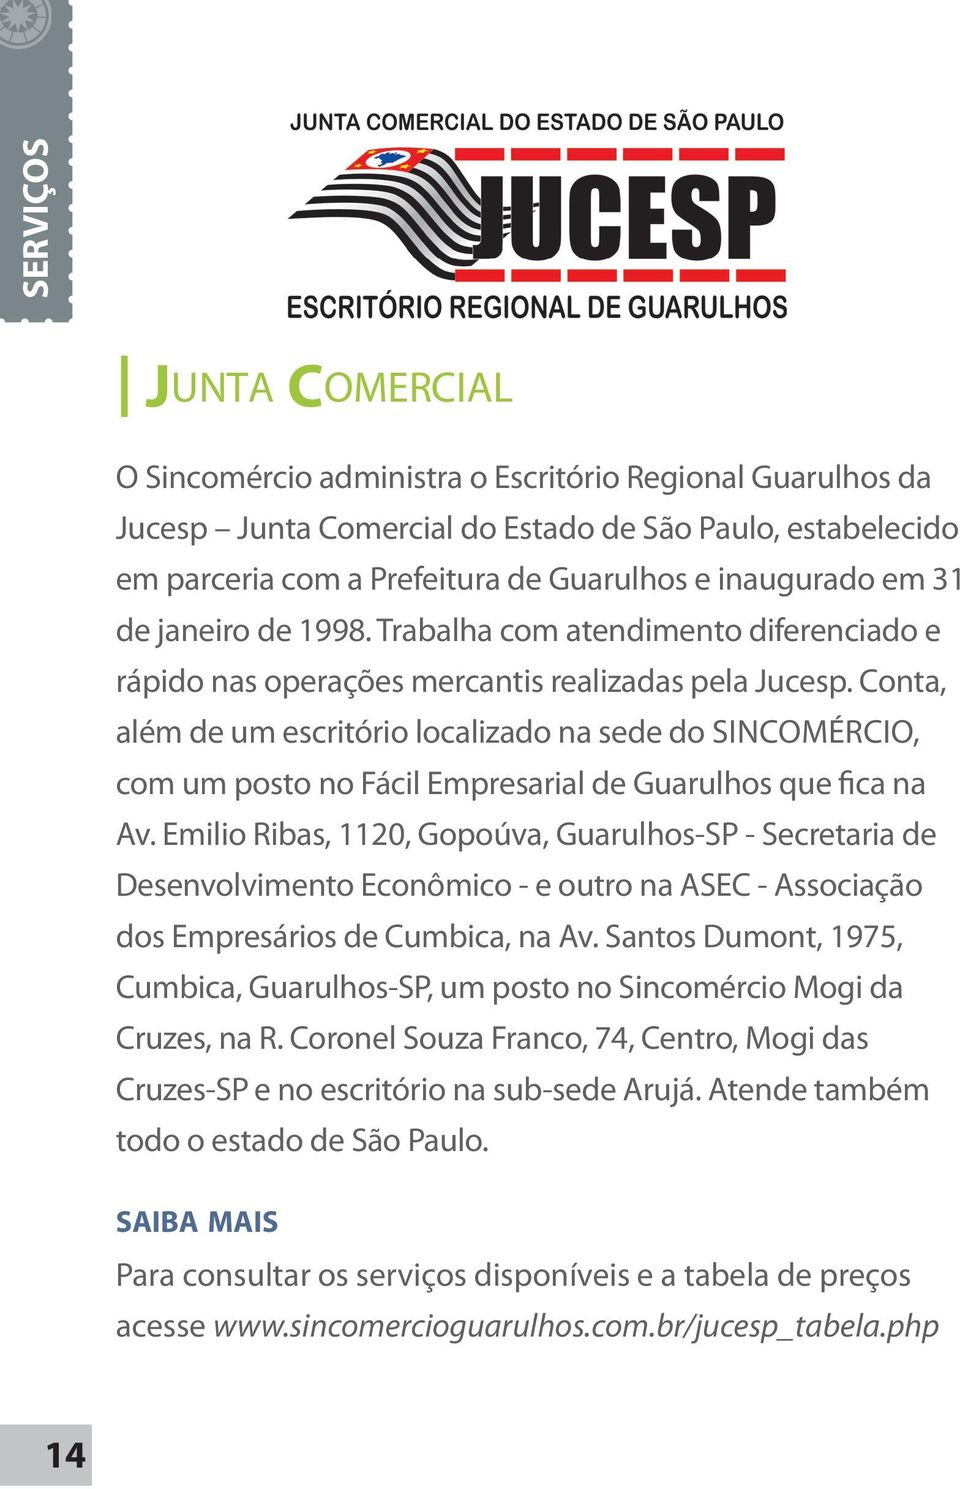 Conta, além de um escritório localizado na sede do SINCOMÉRCIO, com um posto no Fácil Empresarial de Guarulhos que fica na Av.